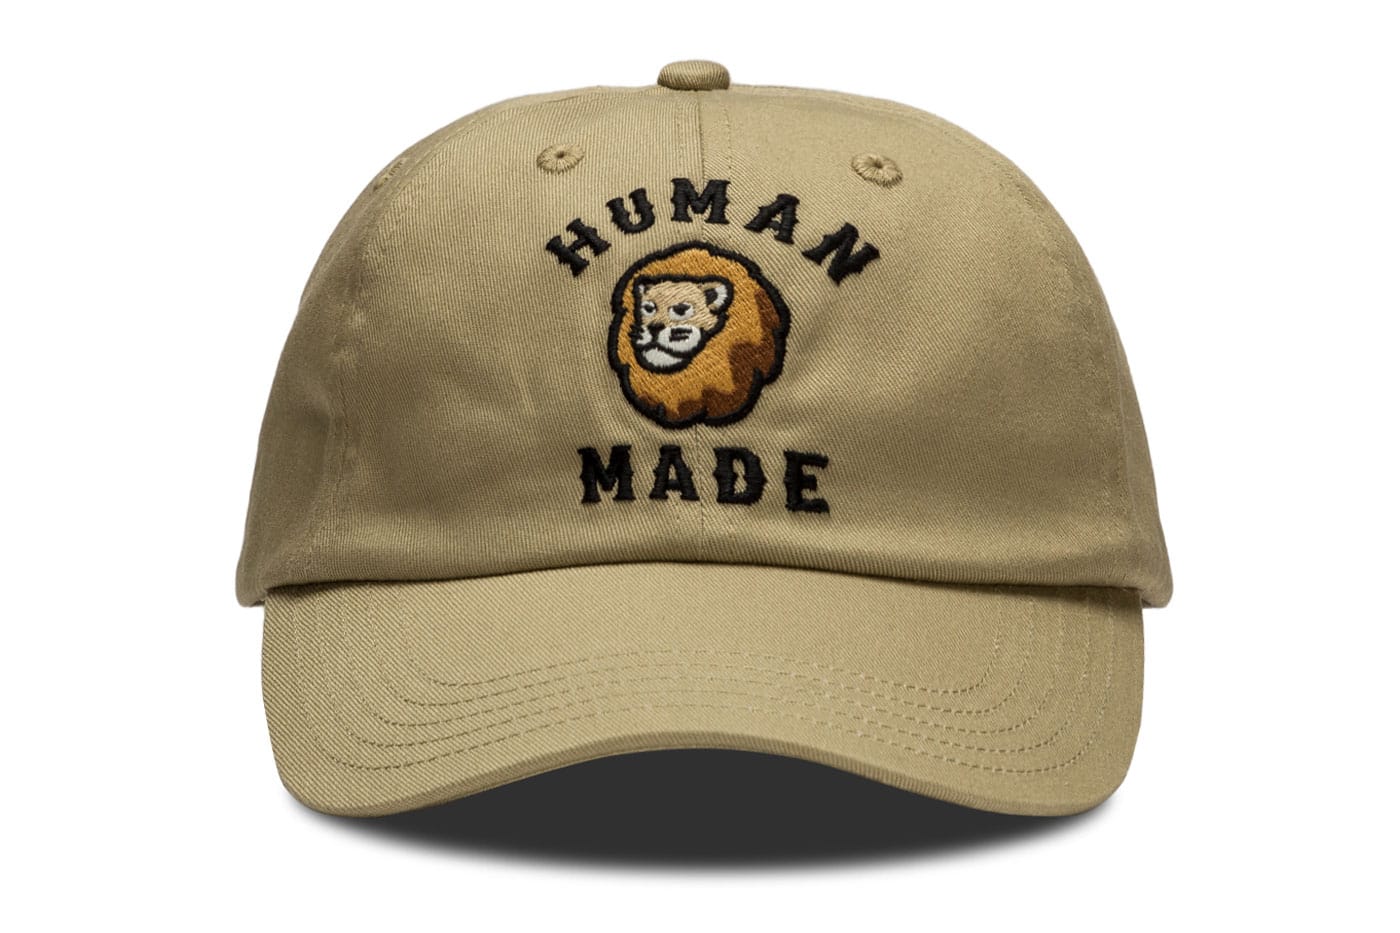 HUMAN MADE x HBX Lion Collection Hong Kong Pop-Up Release | Hypebeast